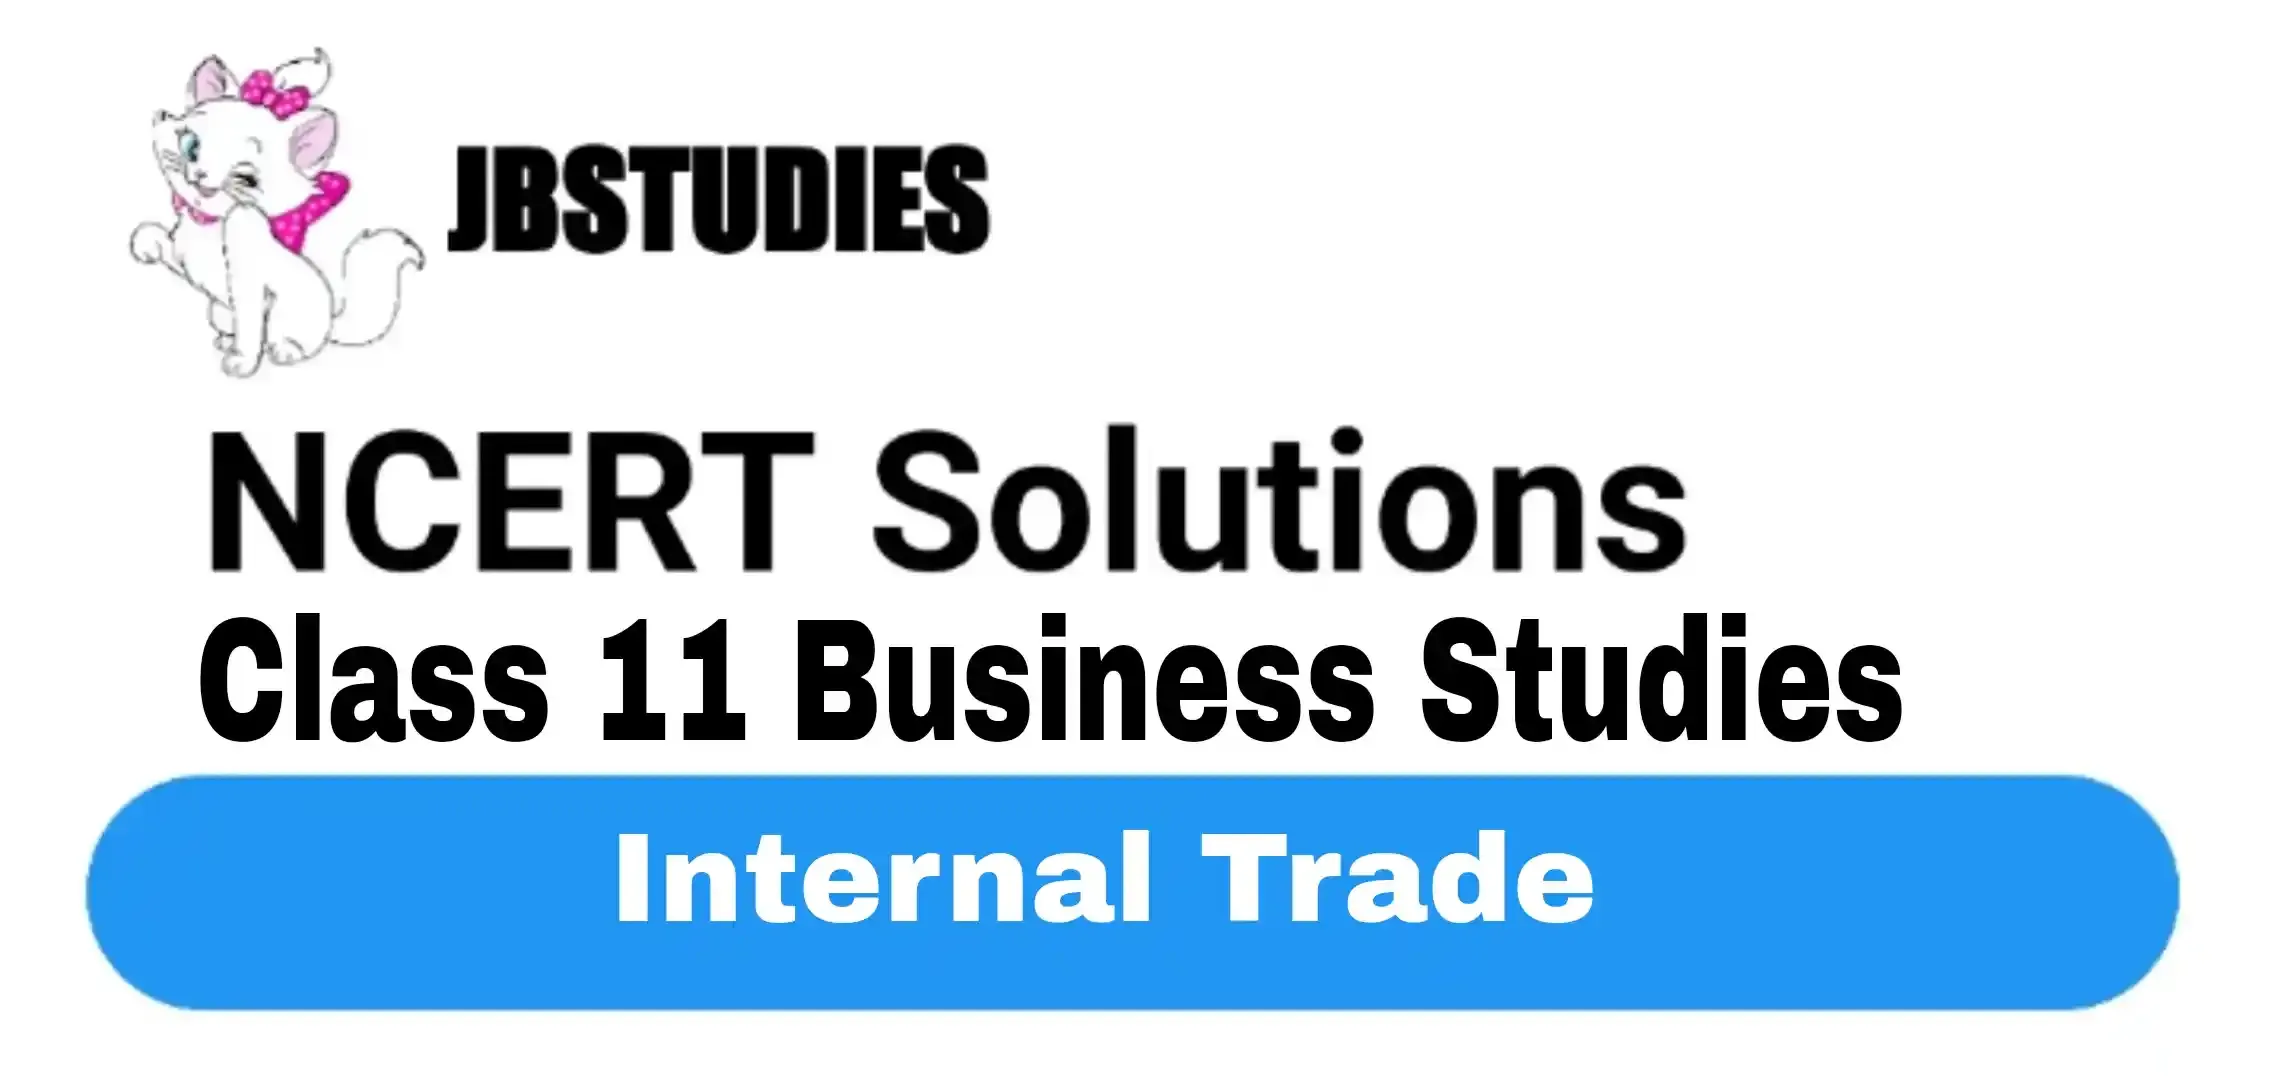 Solutions Class 11 Business Studies Chapter -10 (Internal Trade)